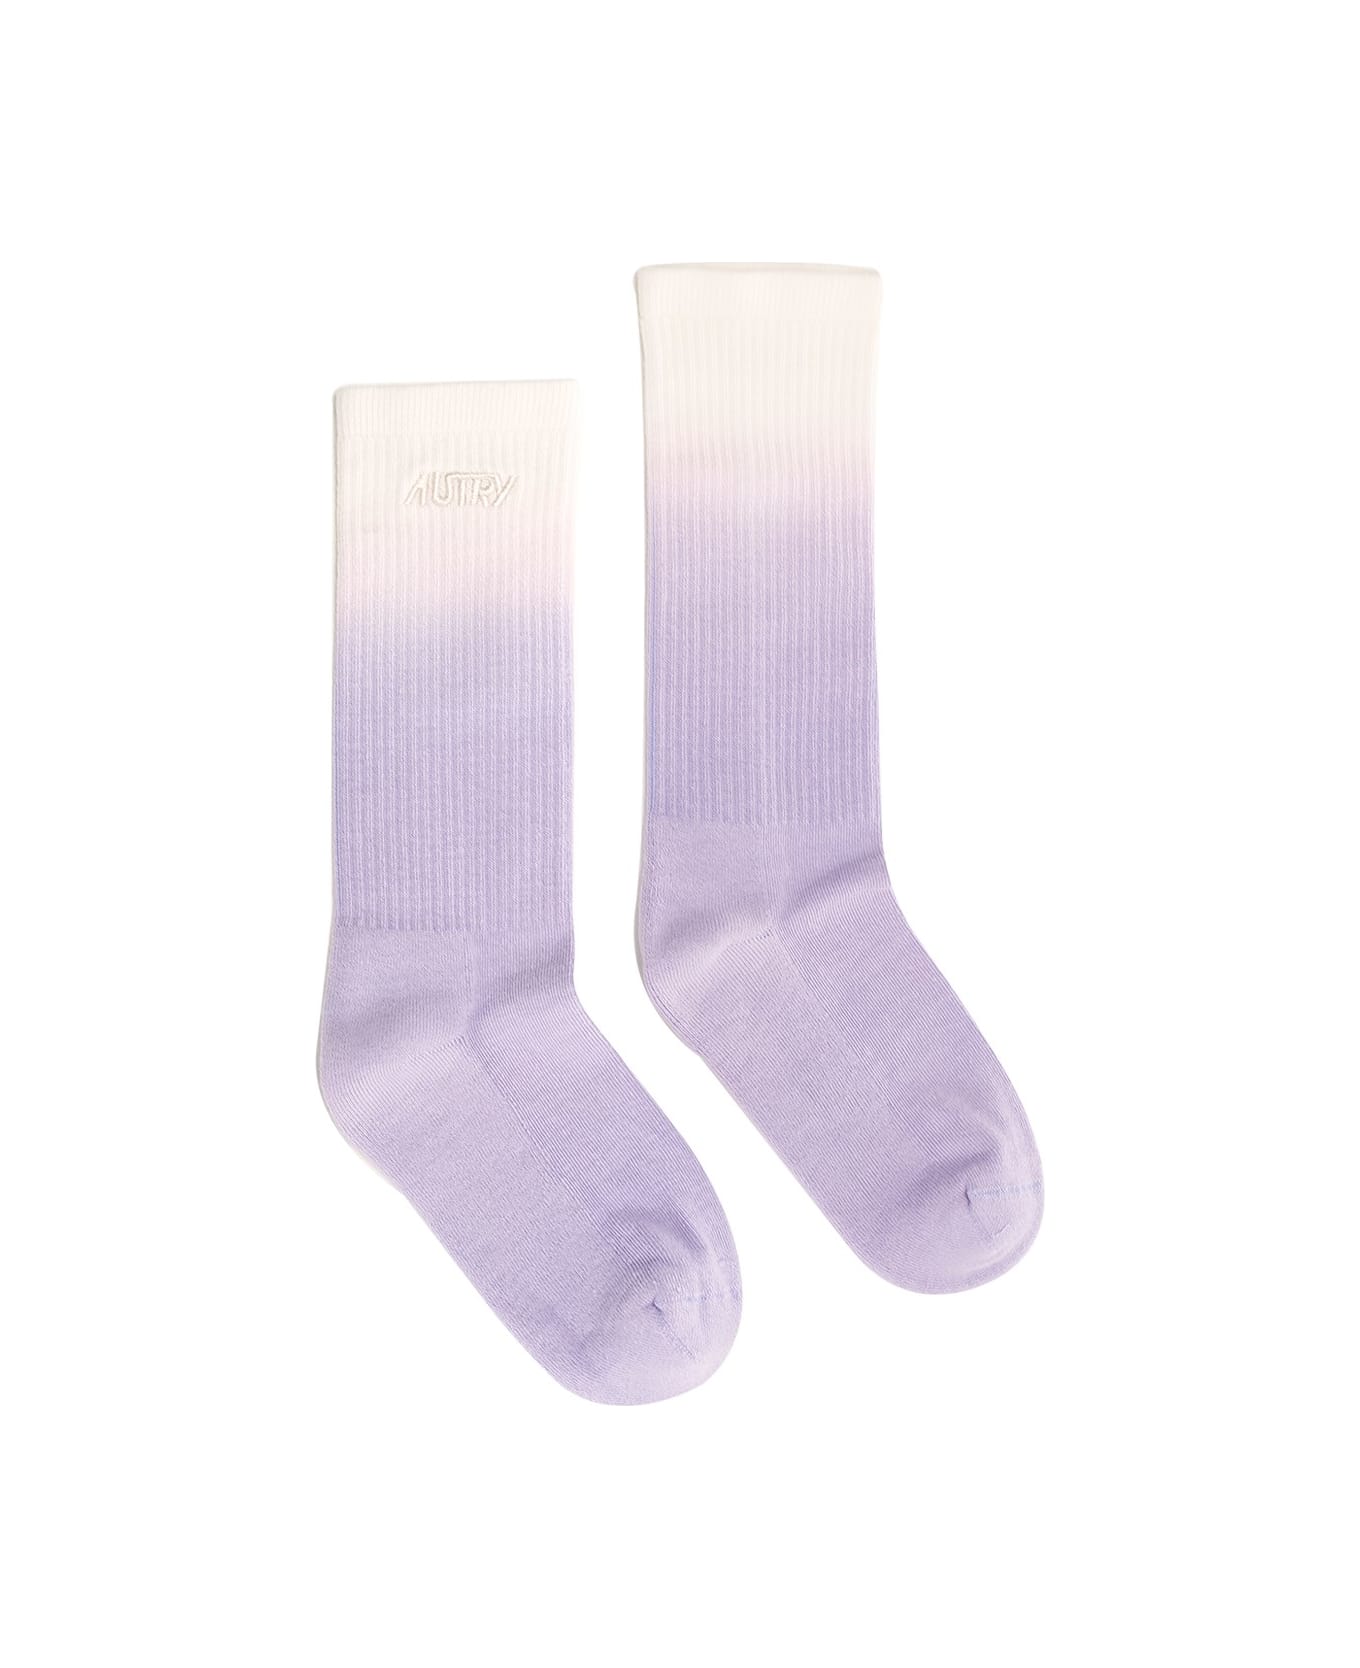 Autry Degradè Socks In Cotton Blend - Multicolor